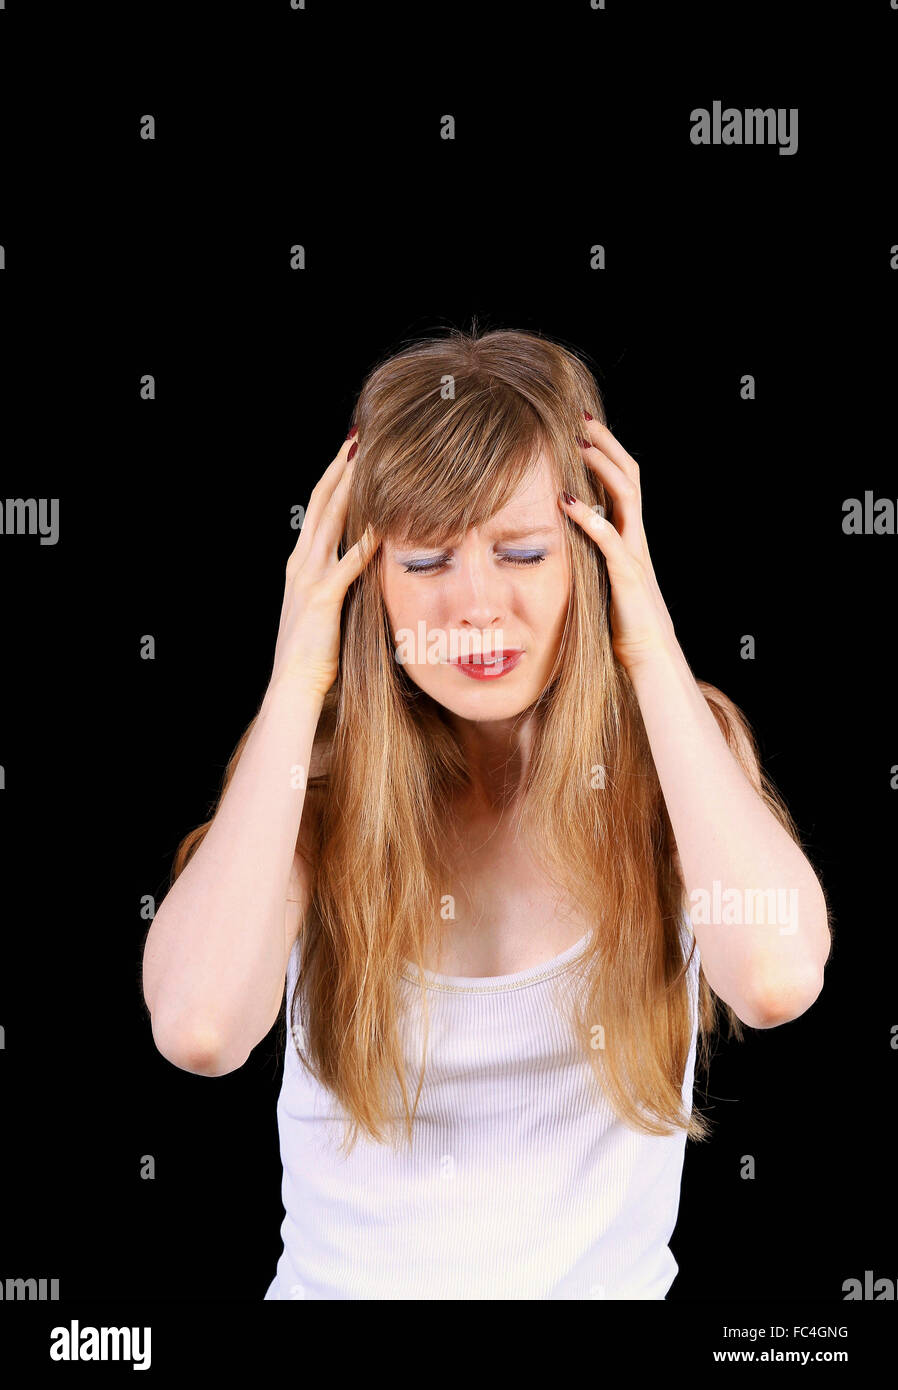 Frustrating migraine Stock Photo